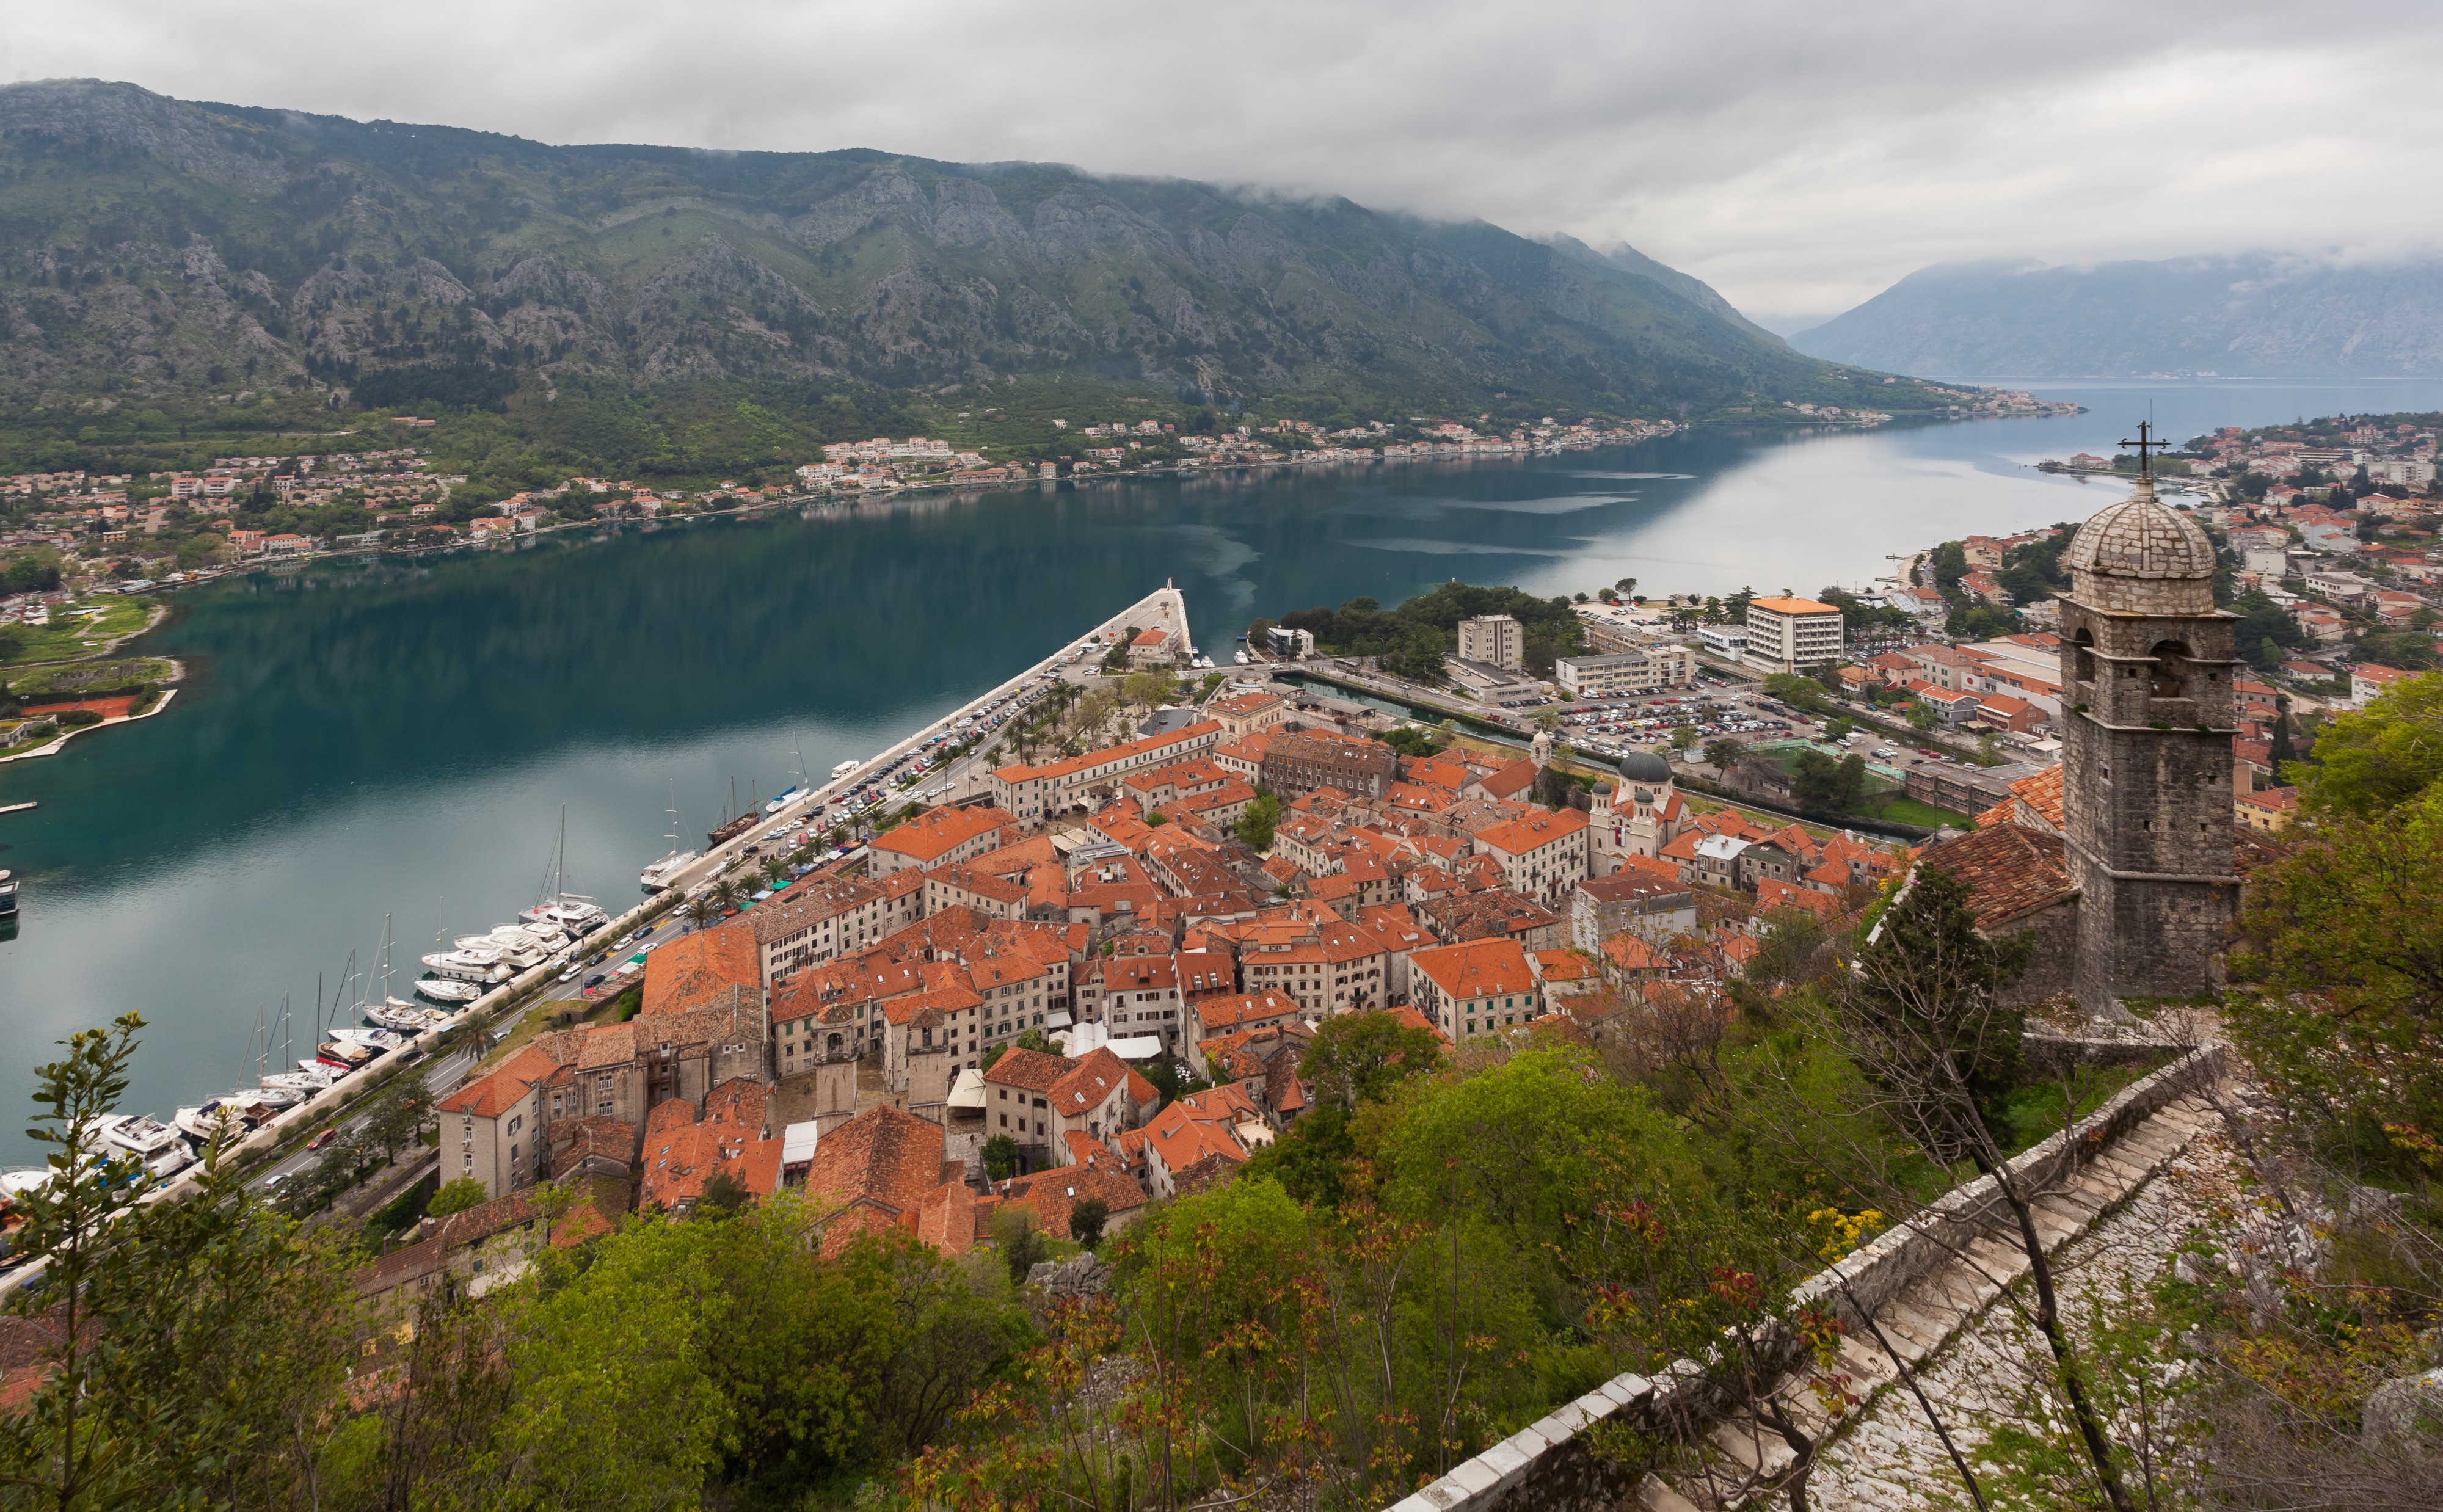 Vista de Kotor, Bahía de Kotor, Montenegro, 2014-04-19, DD 27